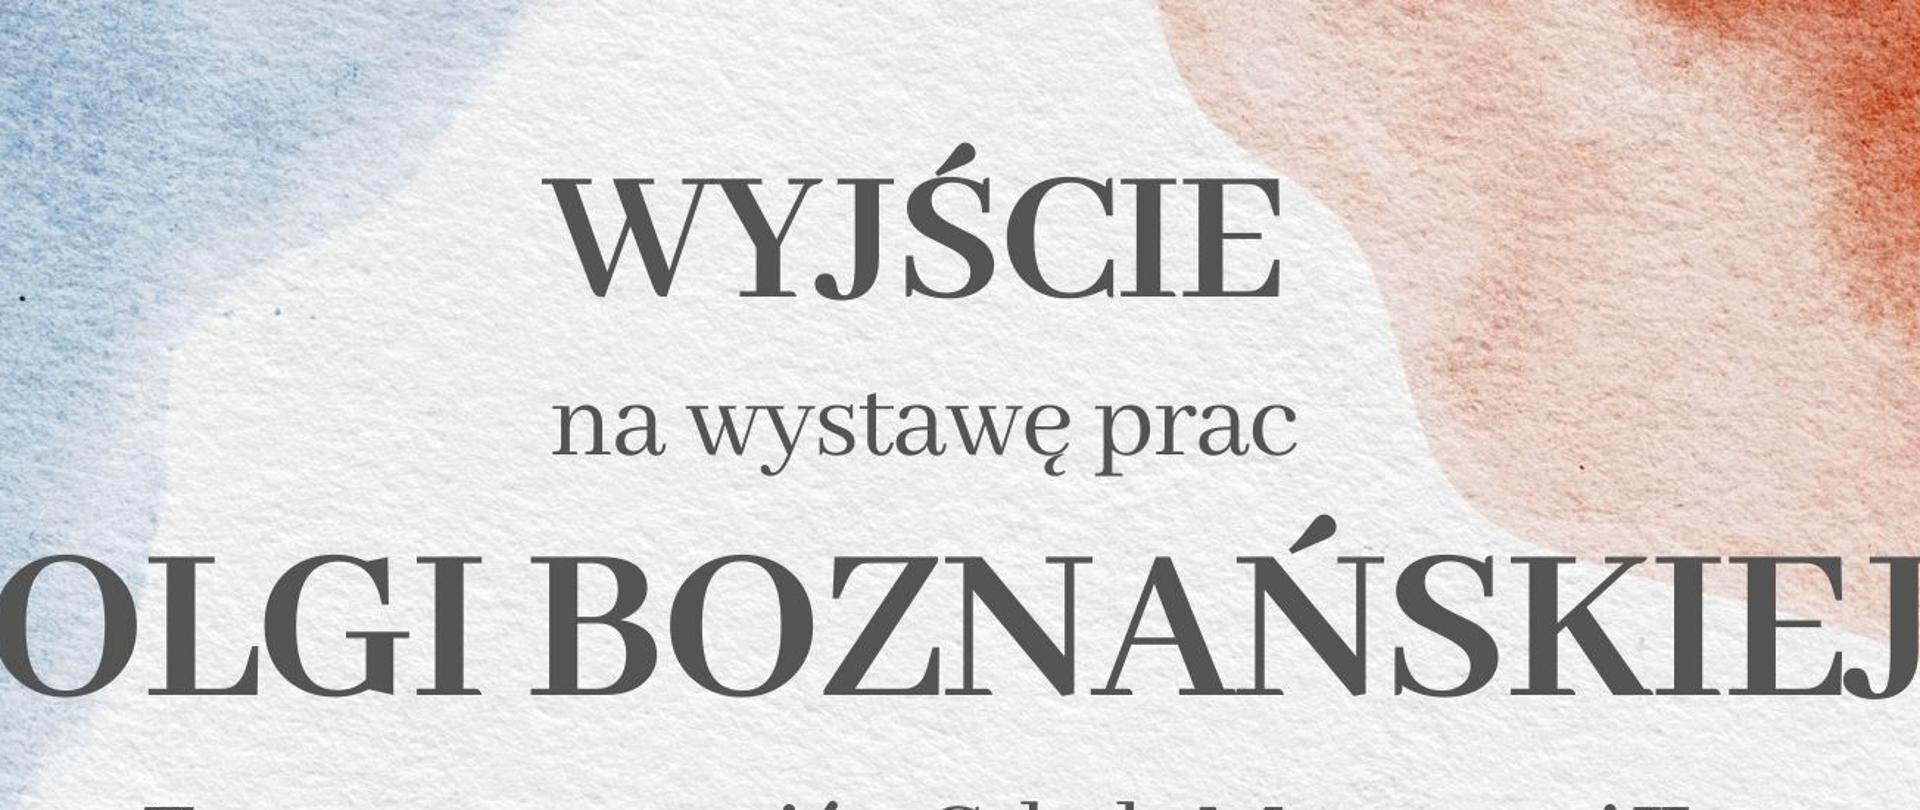 Lekcja muzealna prac Olgi Boznańskiej. -wyjście uczniów szkoły muzycznej II st.